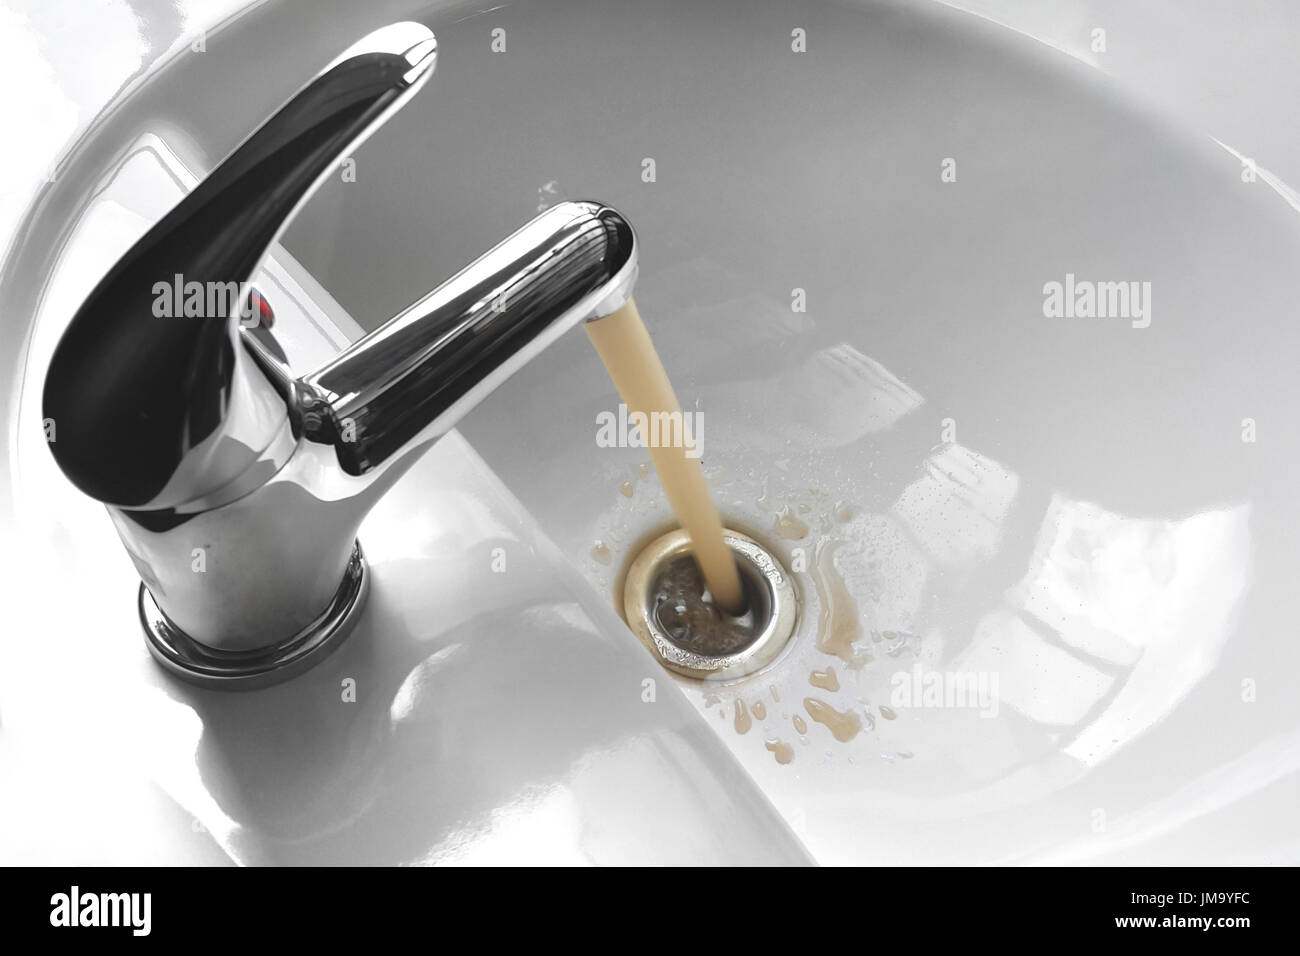 Wasserhahn Wasserhahn mit fließendem kontaminiert matschig und schmutziges Wasser in ein weißes Waschbecken. Stockfoto